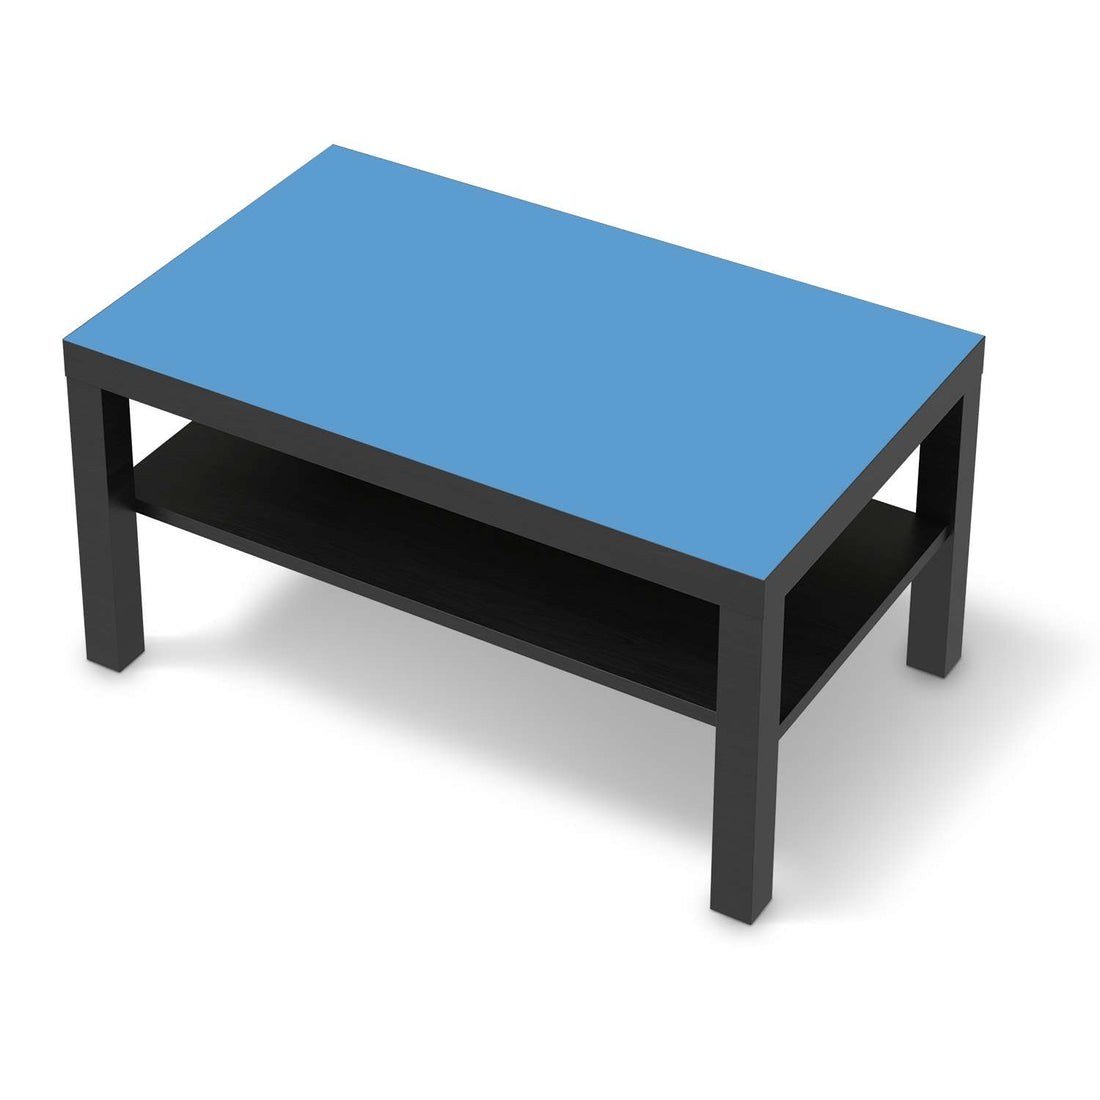 Möbelfolie Blau Light - IKEA Lack Tisch 90x55 cm - schwarz